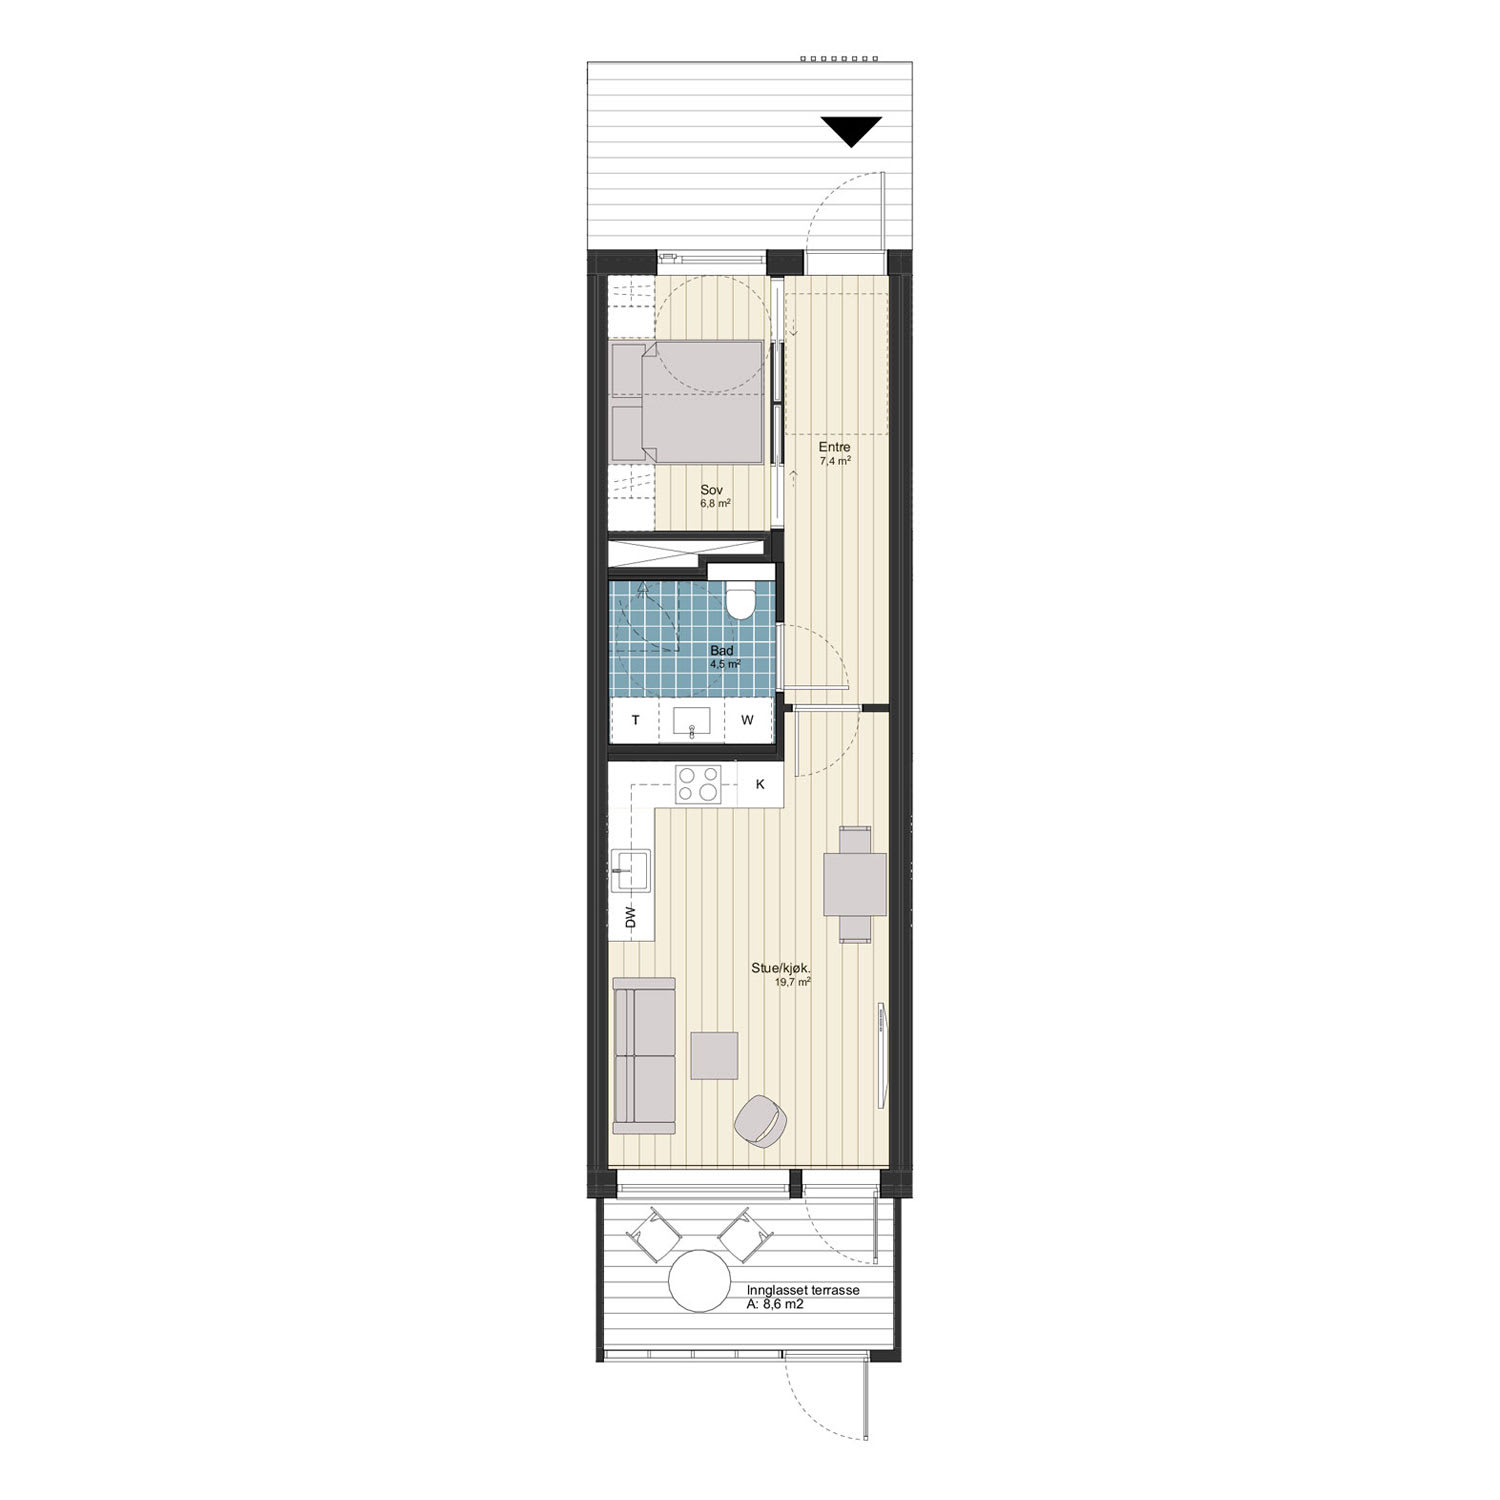 2-roms leilighet med markterrasse, 40 m² (BRA-i)